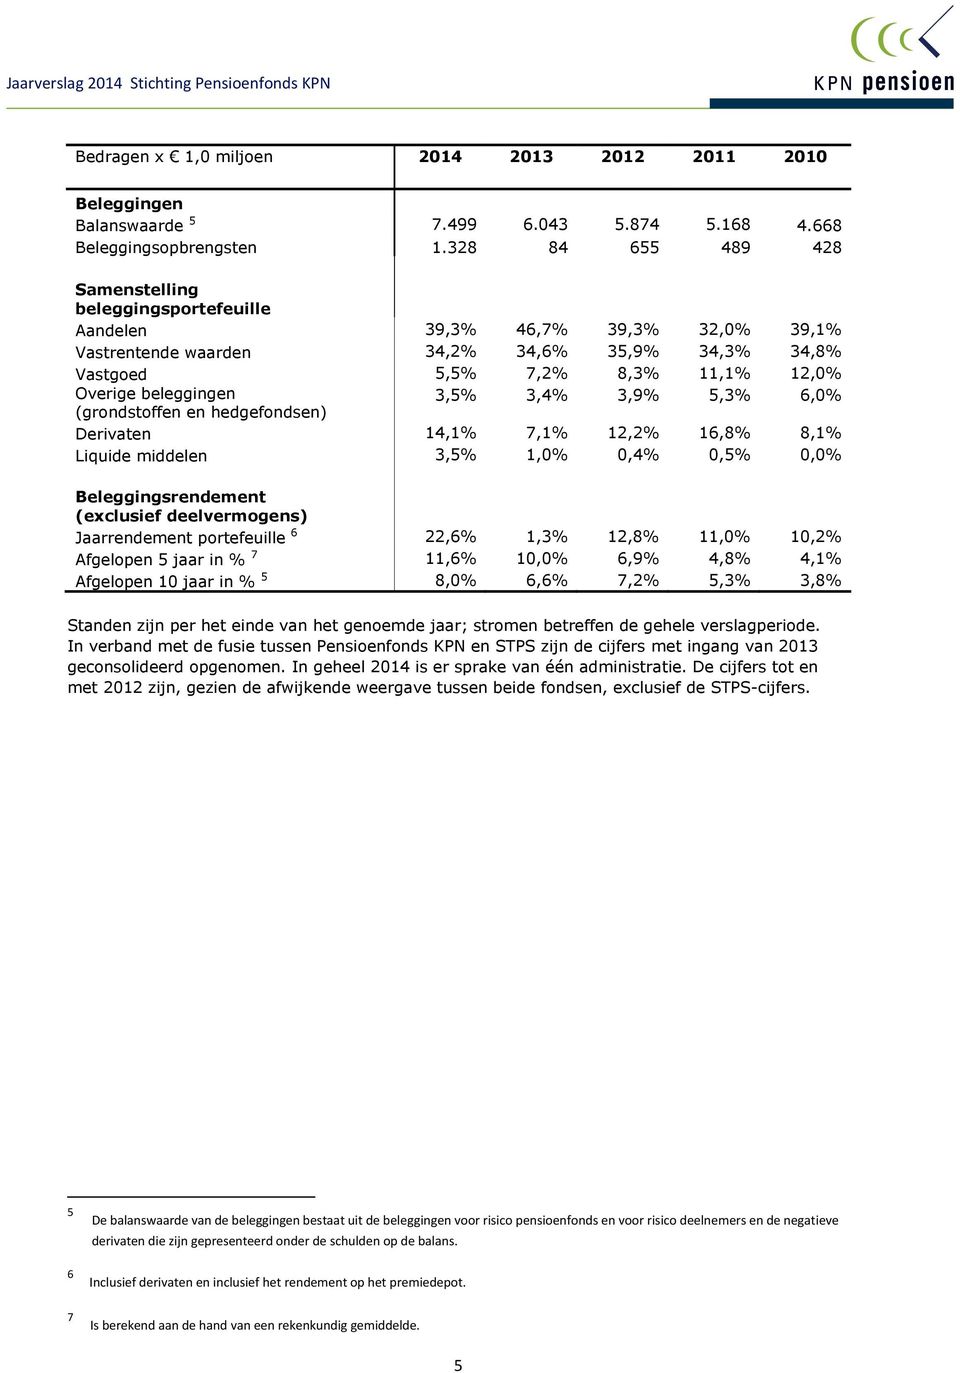 beleggingen 3,5% 3,4% 3,9% 5,3% 6,0% (grondstoffen en hedgefondsen) Derivaten 14,1% 7,1% 12,2% 16,8% 8,1% Liquide middelen 3,5% 1,0% 0,4% 0,5% 0,0% Beleggingsrendement (exclusief deelvermogens)